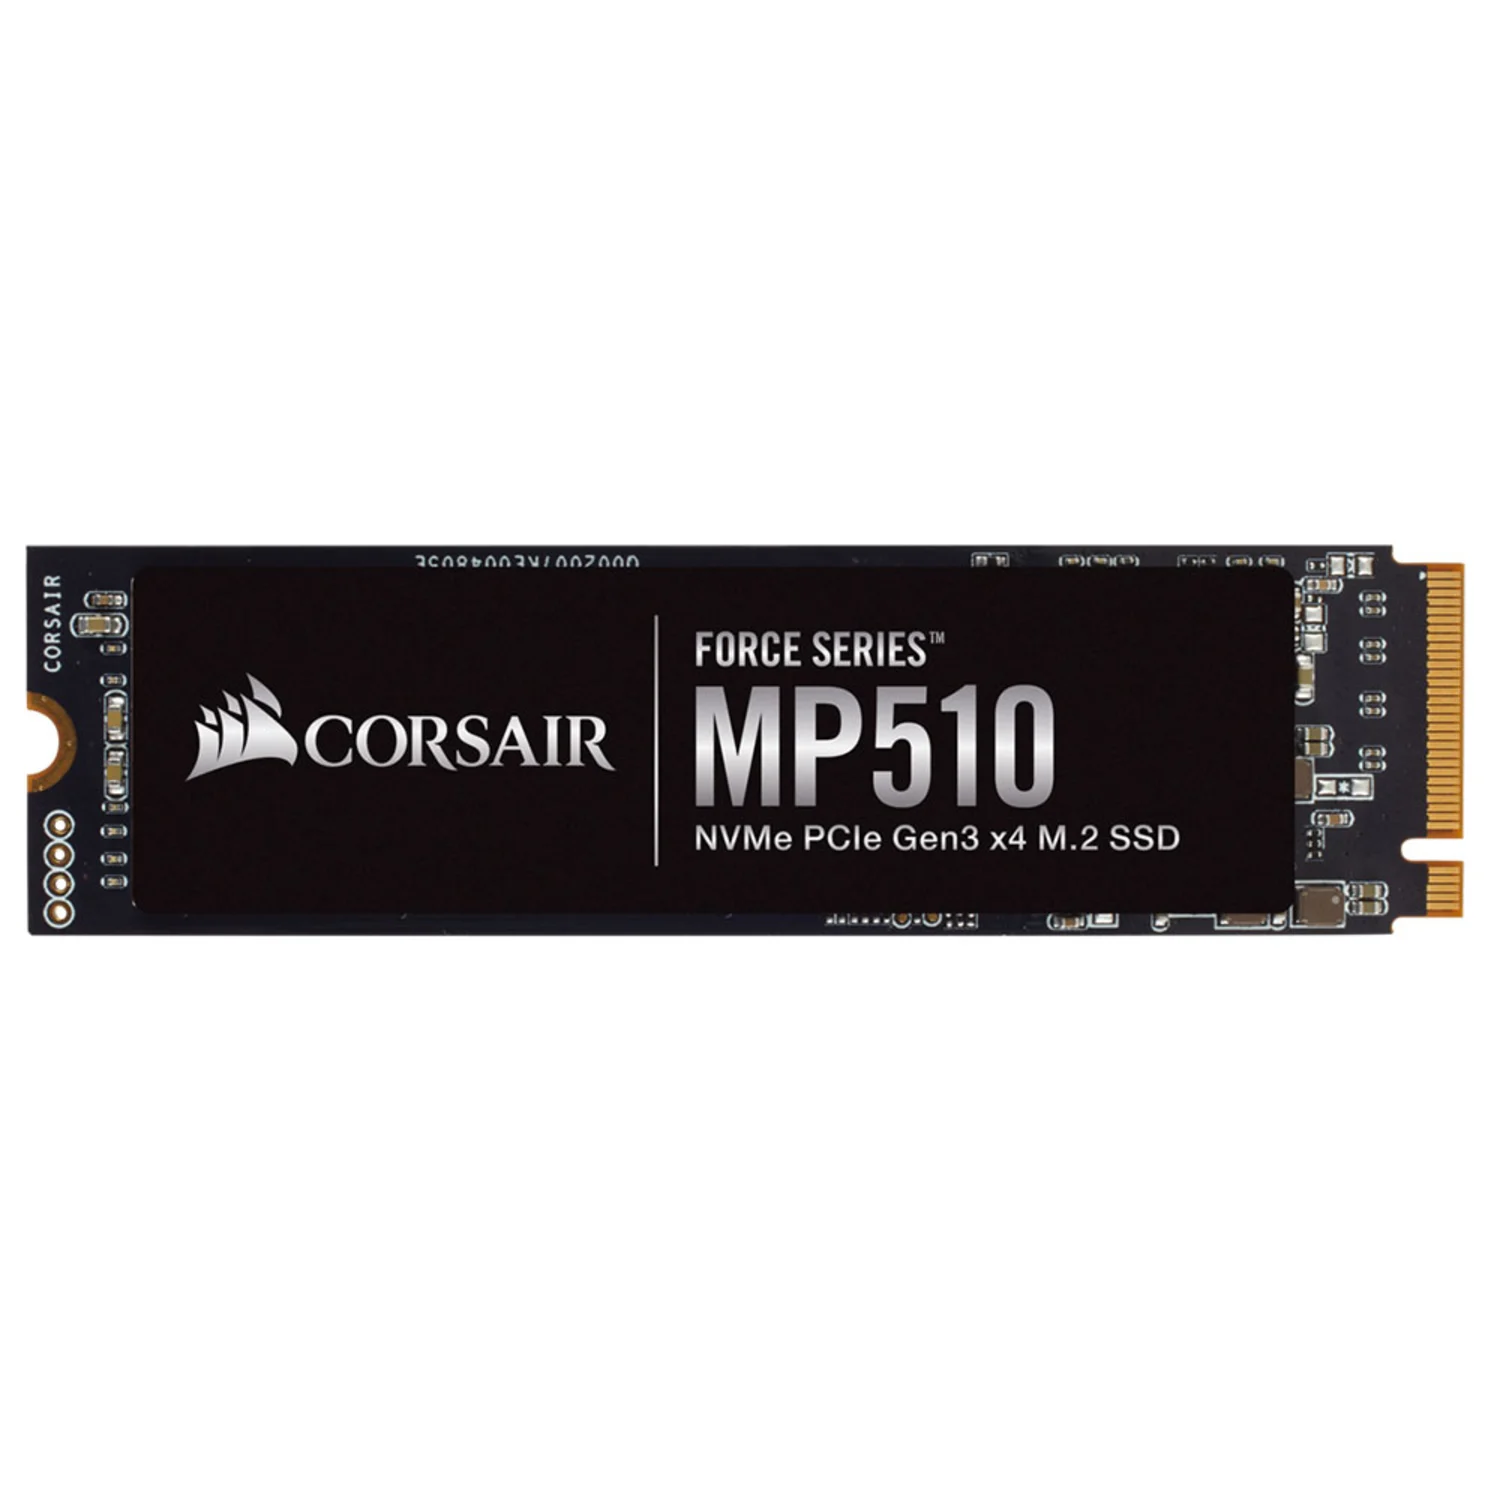 SSD M.2 Corsair MP510 480GB NVMe PCIe - F480GBMP510B